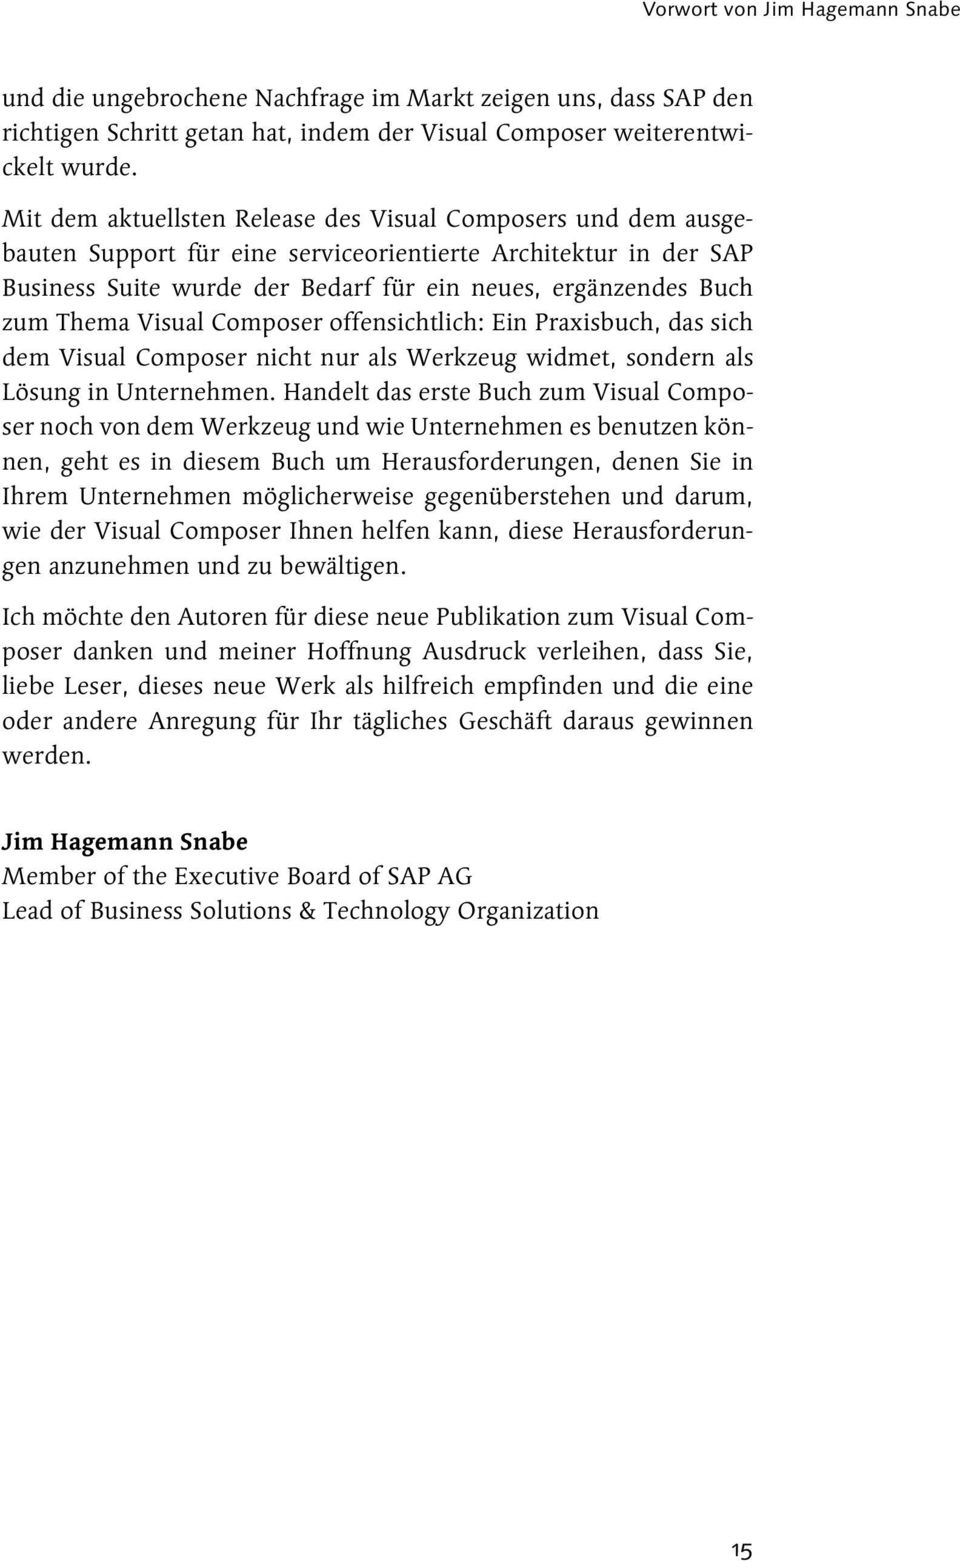 Thema Visual Composer offensichtlich: Ein Praxisbuch, das sich dem Visual Composer nicht nur als Werkzeug widmet, sondern als Lösung in Unternehmen.